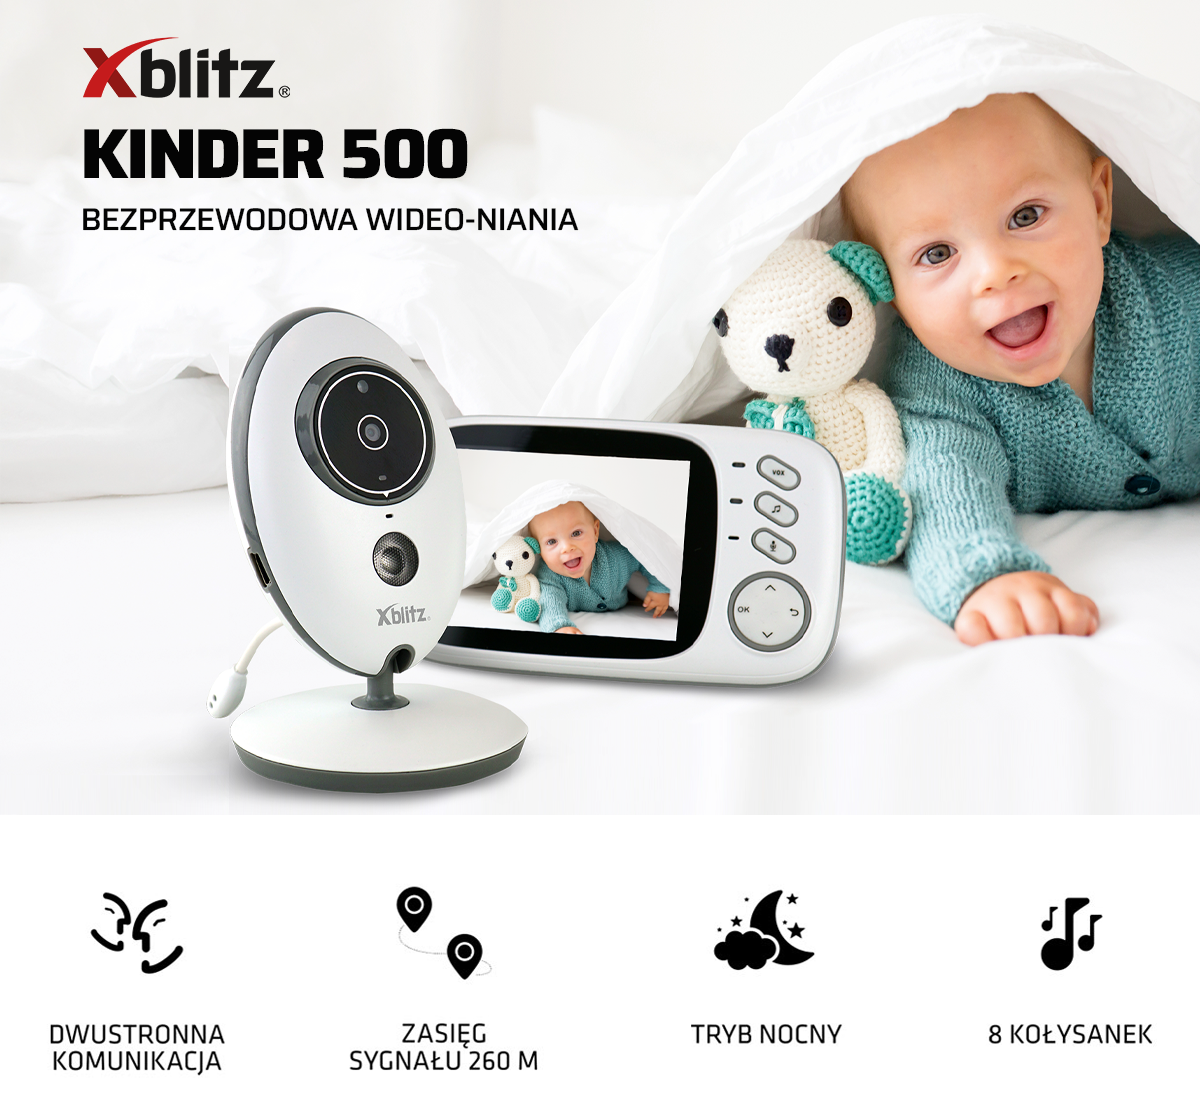 Niania elektryczna Xblitz Kinder 500 z opisem funkcjonalności